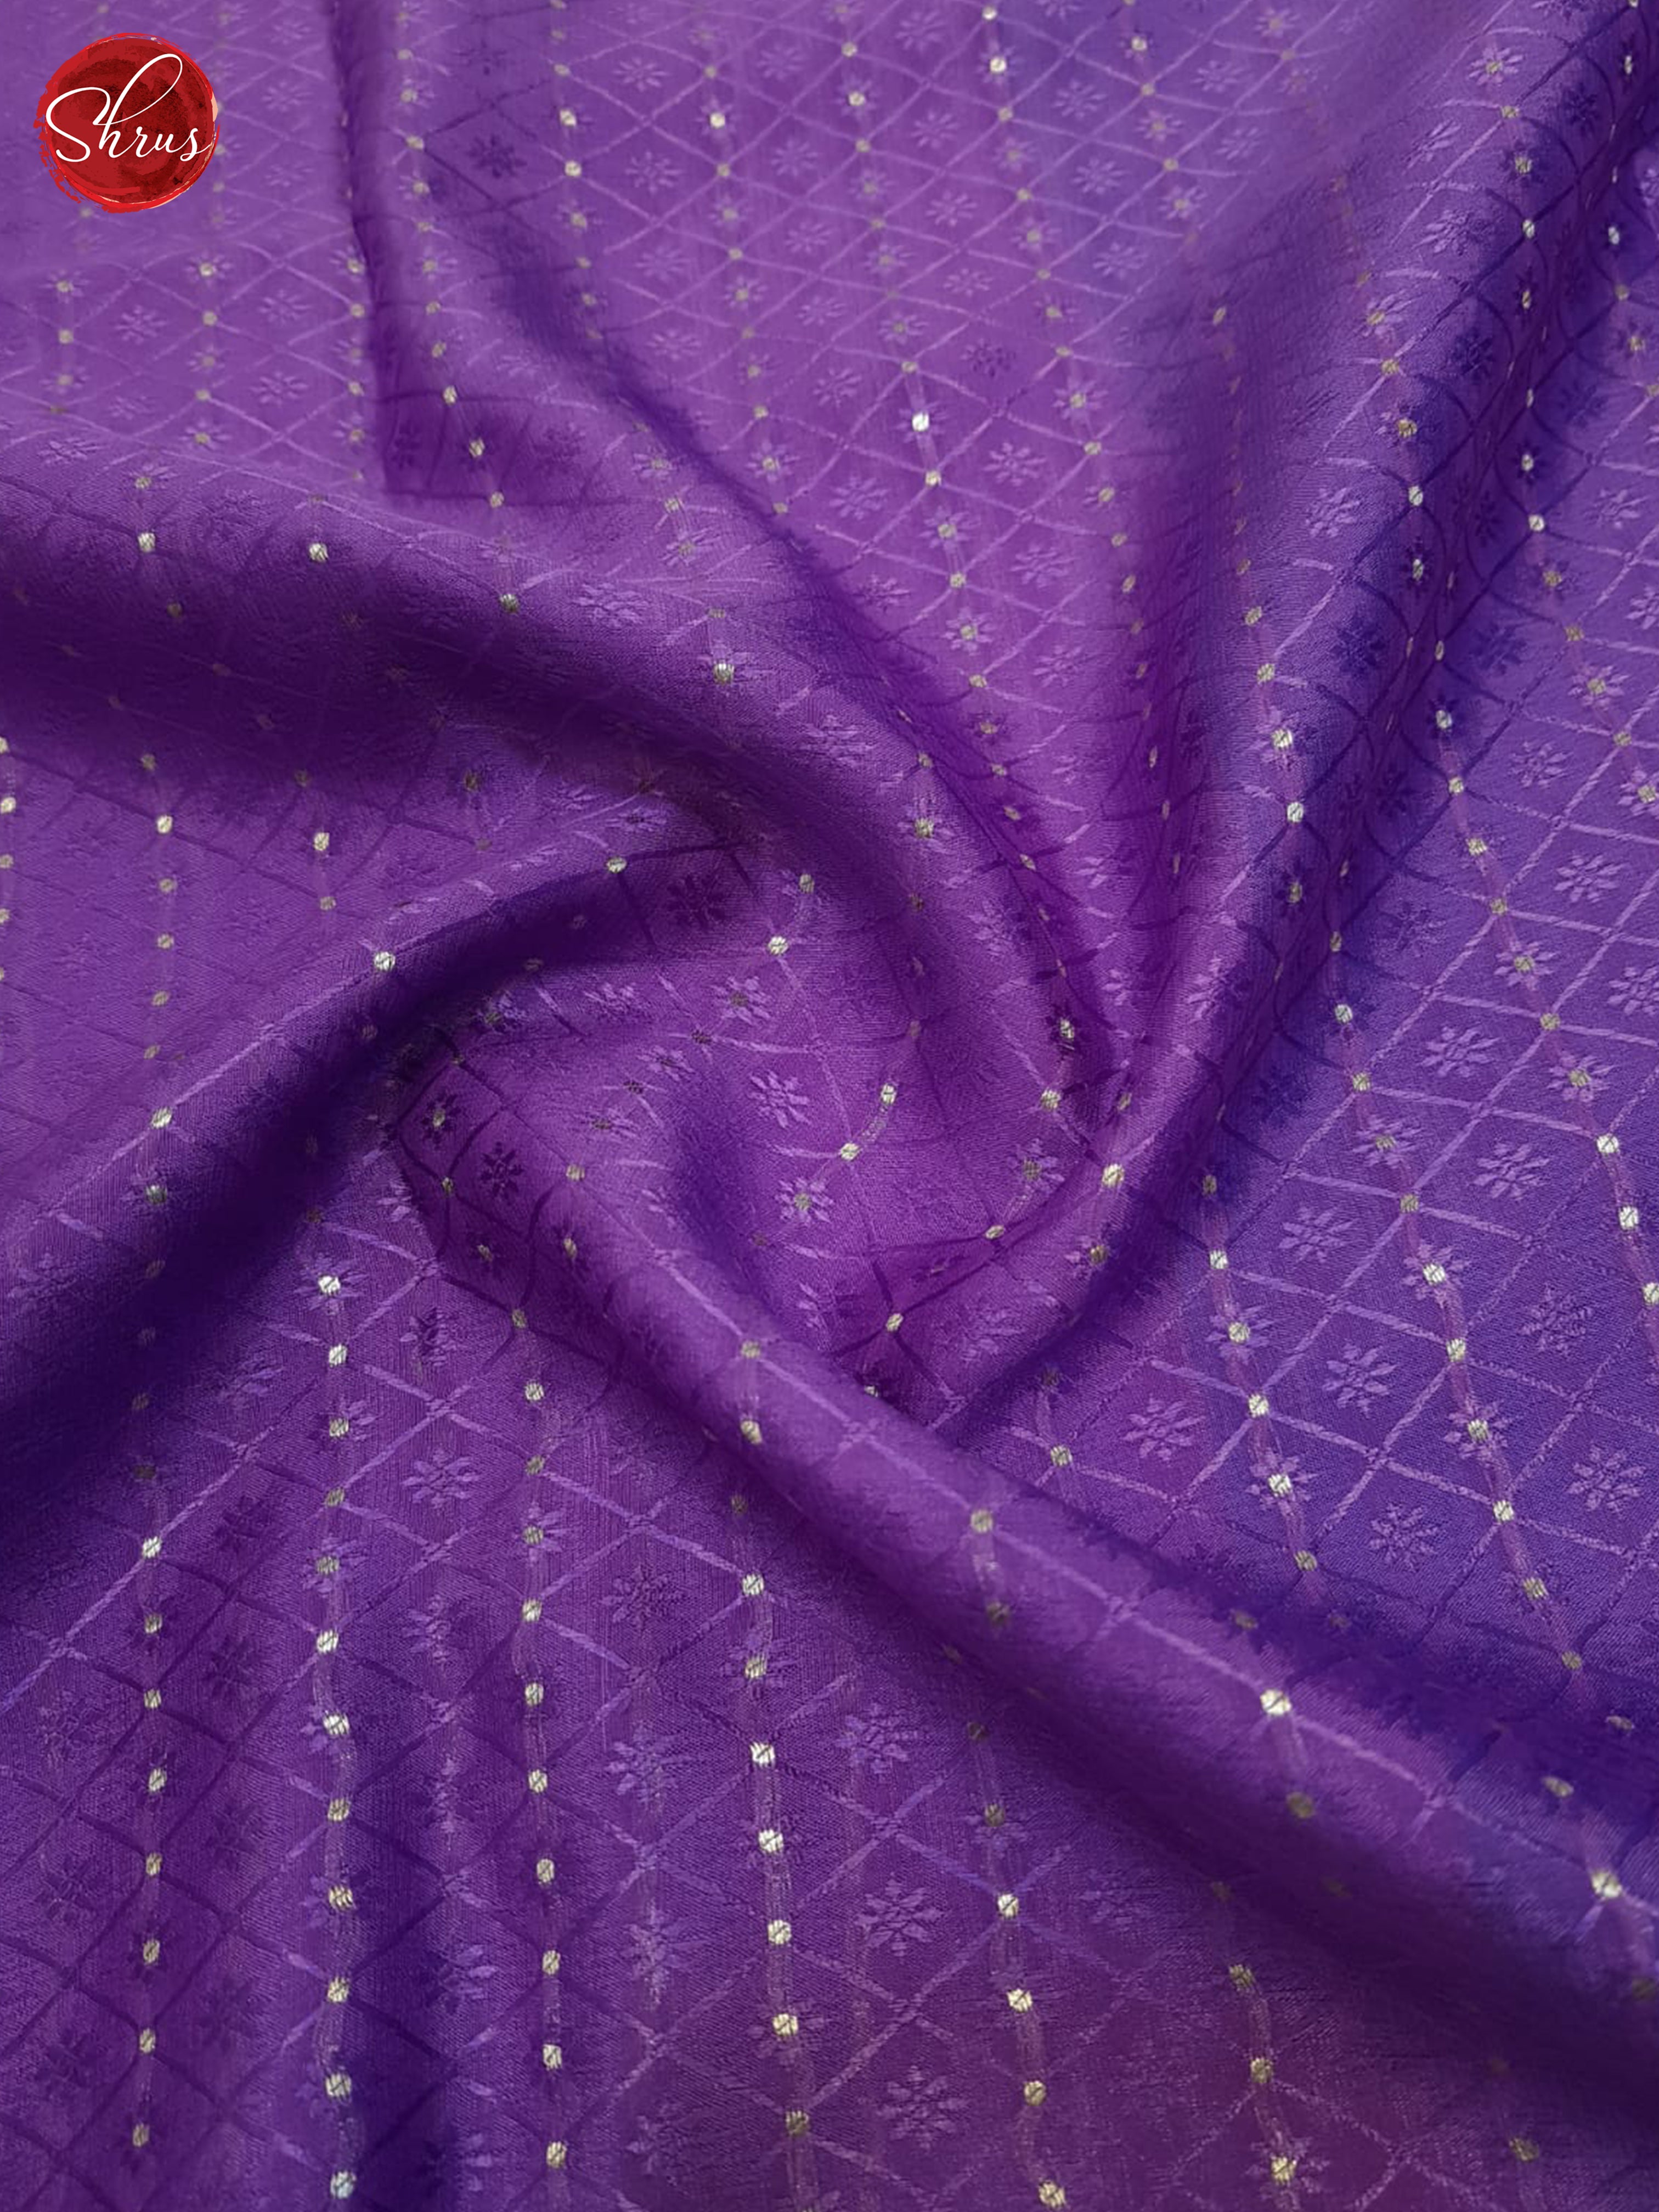 Lavender & Blue- Mysore Silk Saree - Shop on ShrusEternity.com